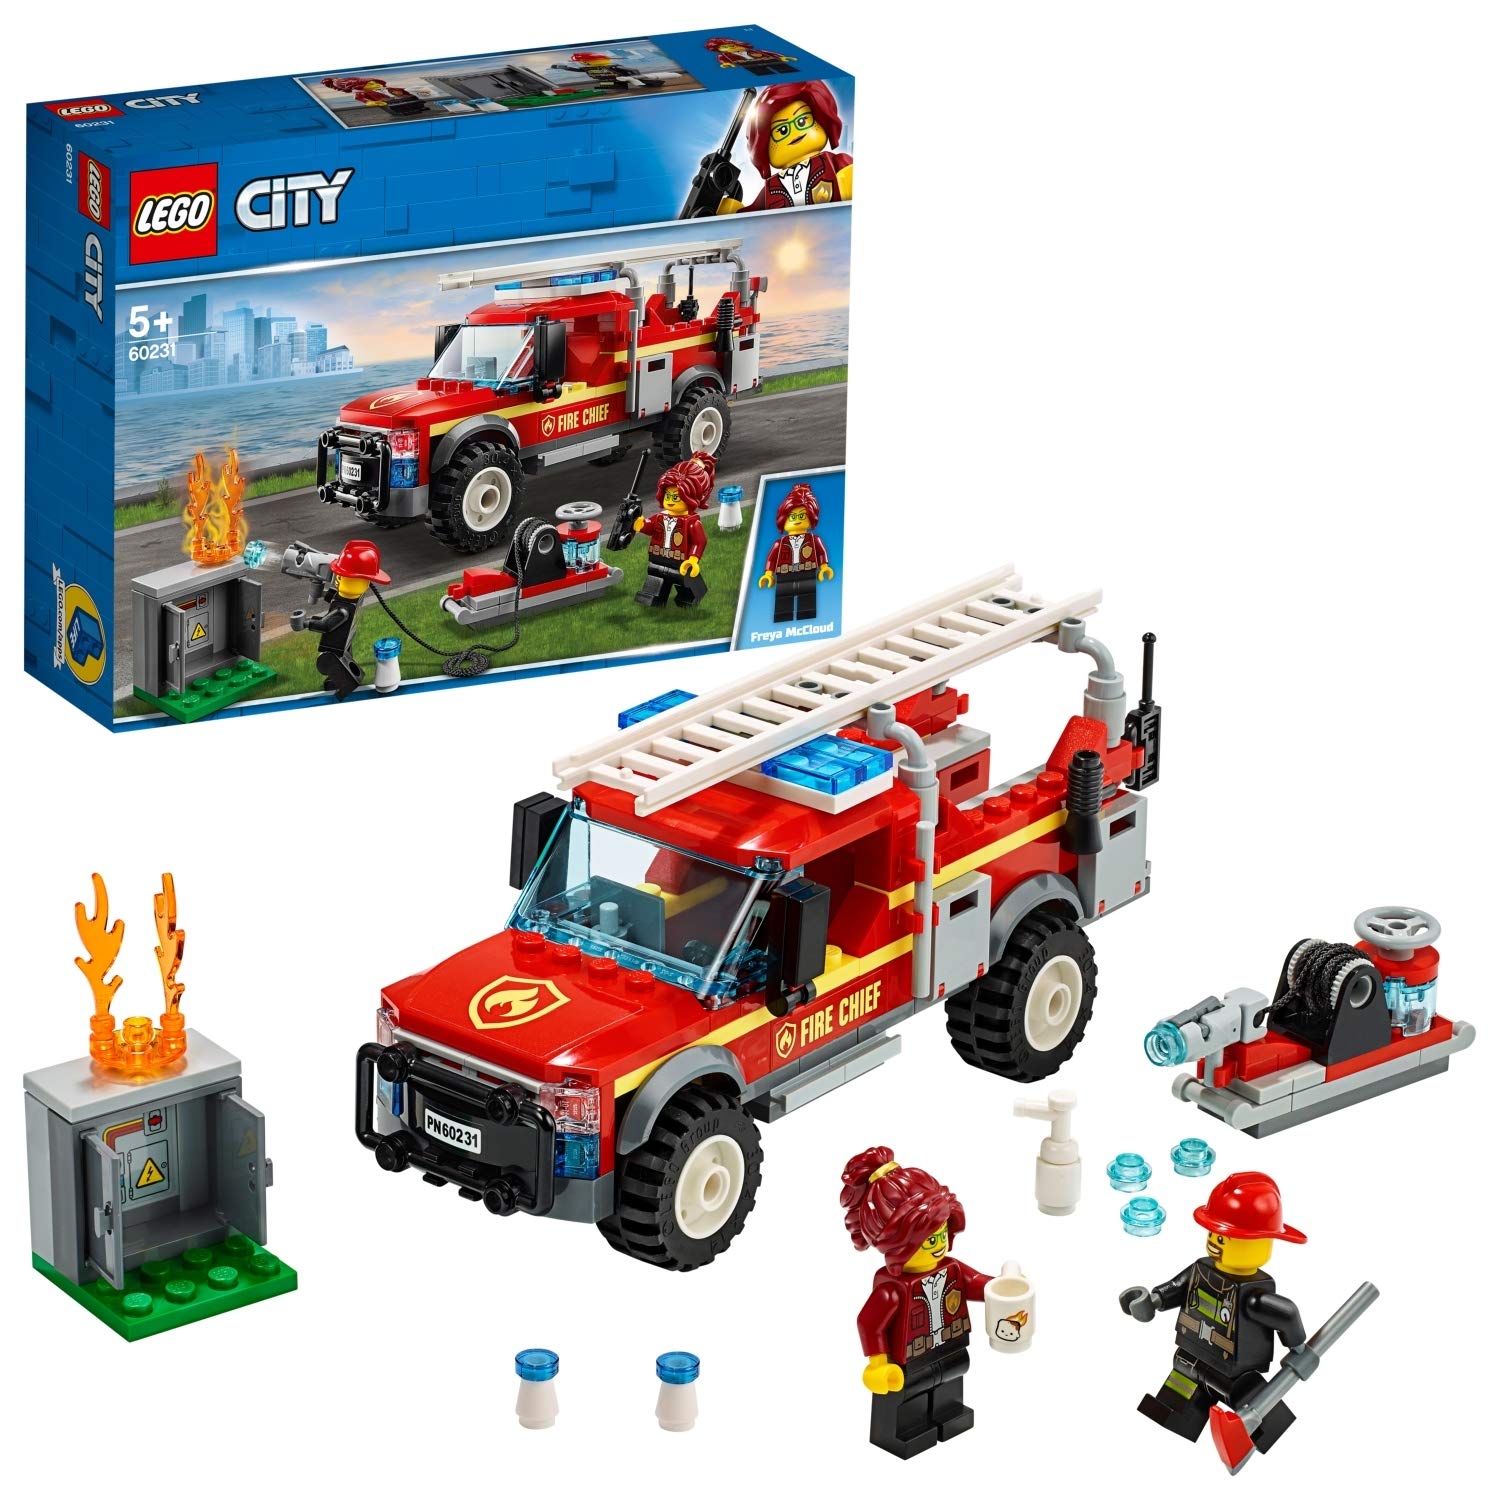 Lego City 60231 Fire Brigade Operator